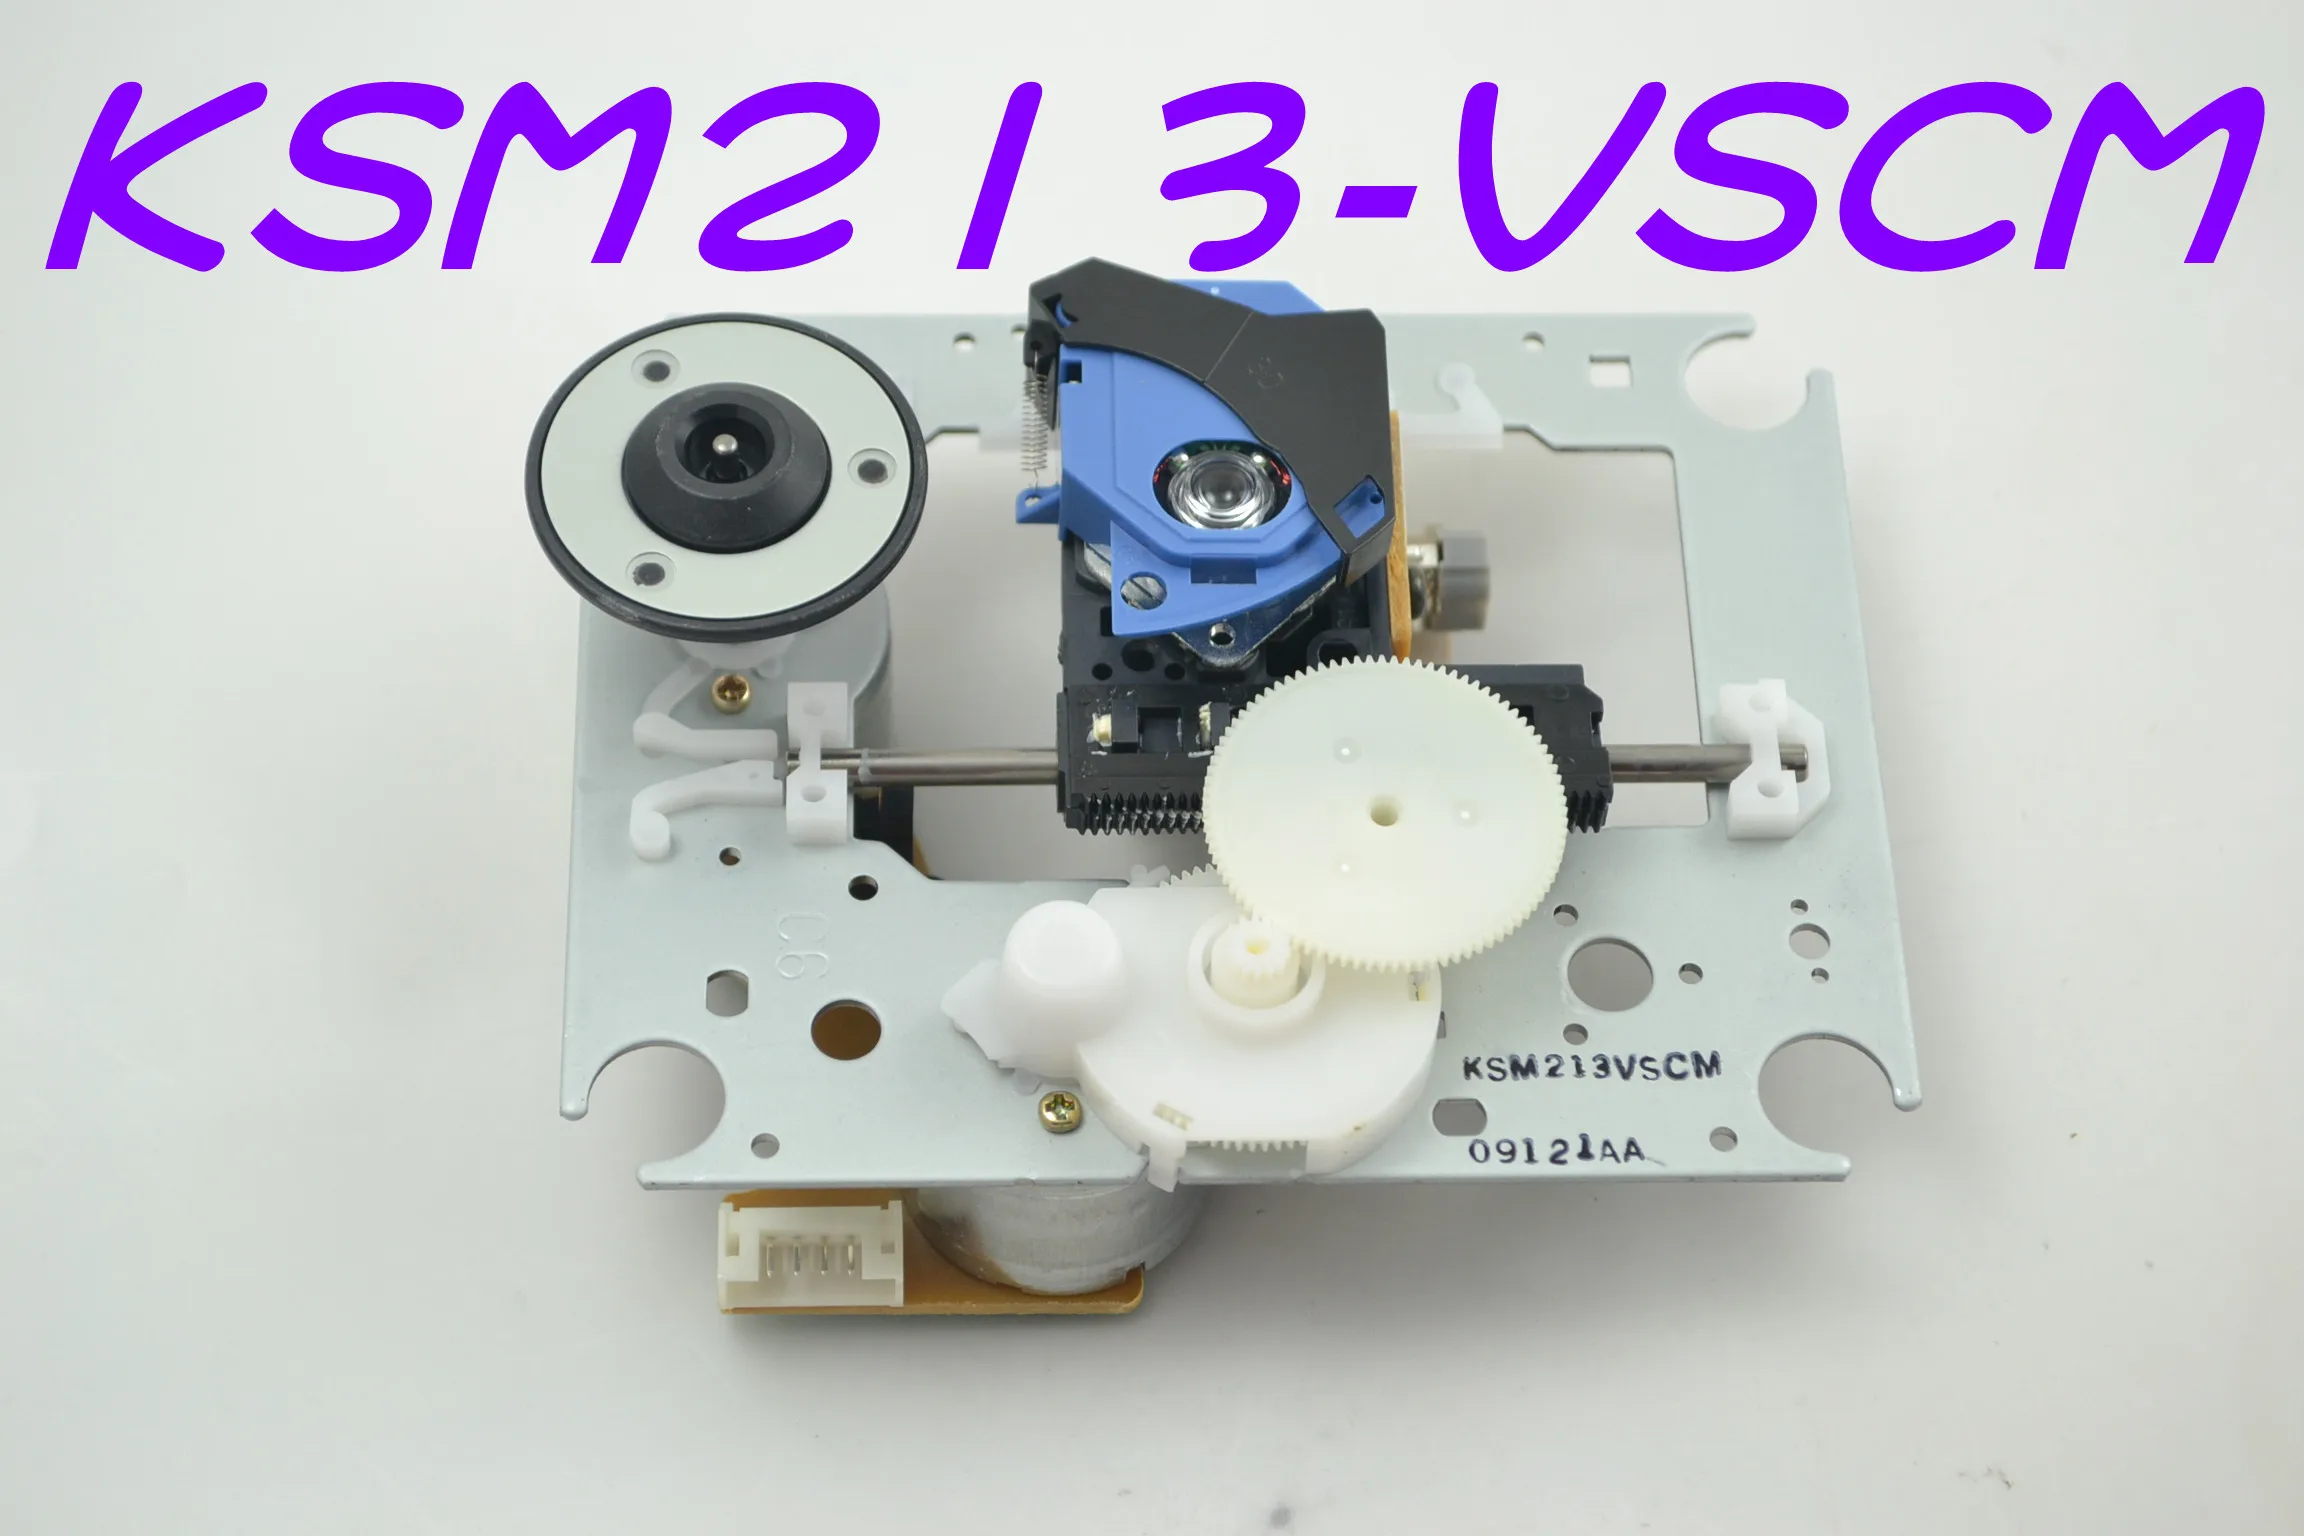 

Оригинальный фотооптический приемный механизм KSM213VSCM CD VCD, Лазерная линза в сборе, KSM 213VSCM